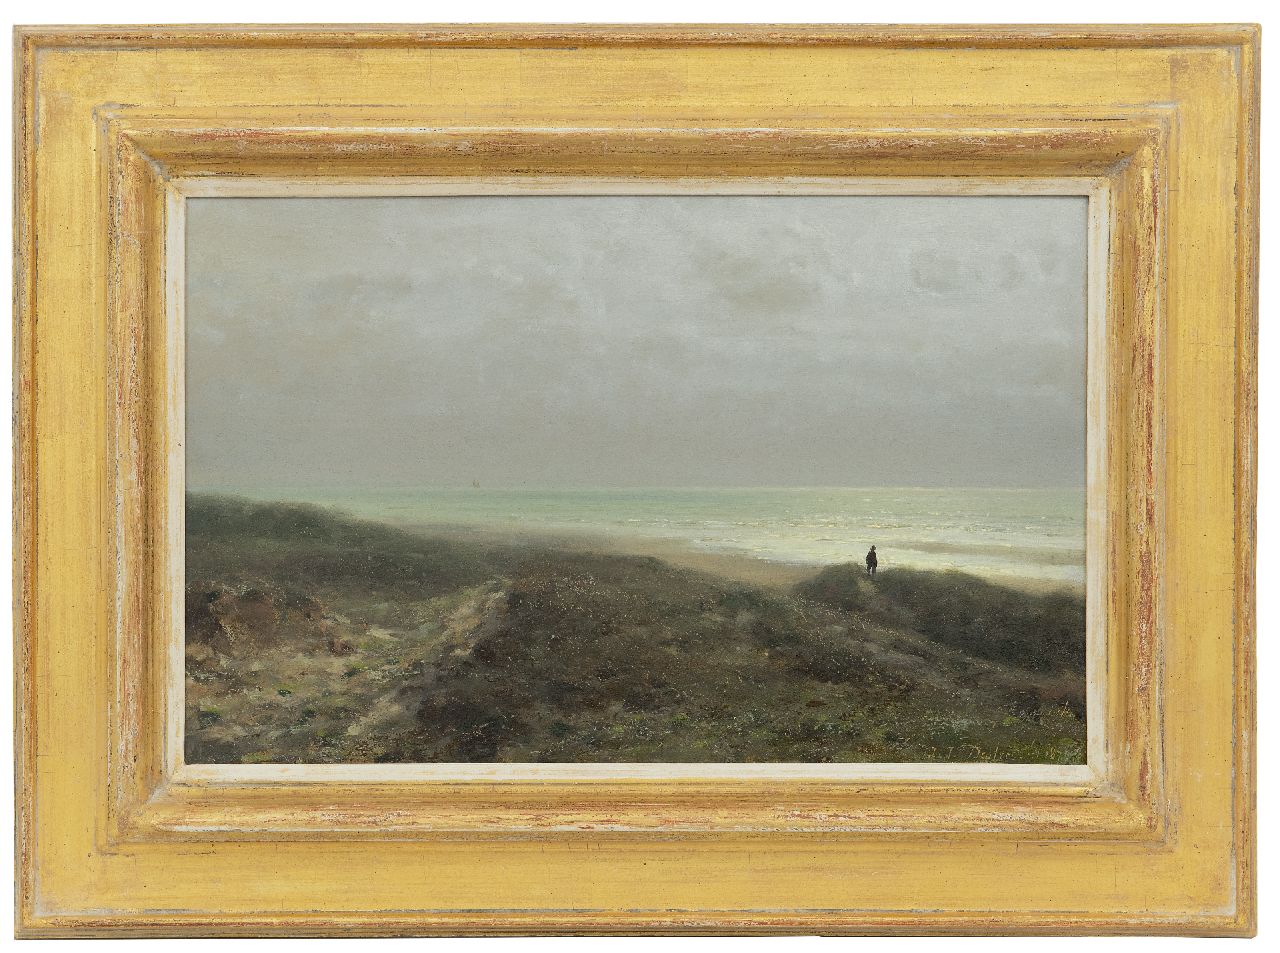 Destrée J.J.  | Johannes Josephus Destrée, Duinlandschap met wandelaar uitkijkend over zee, olieverf op paneel 27,6 x 43,8 cm, gesigneerd rechtsonder en gedateerd 1879